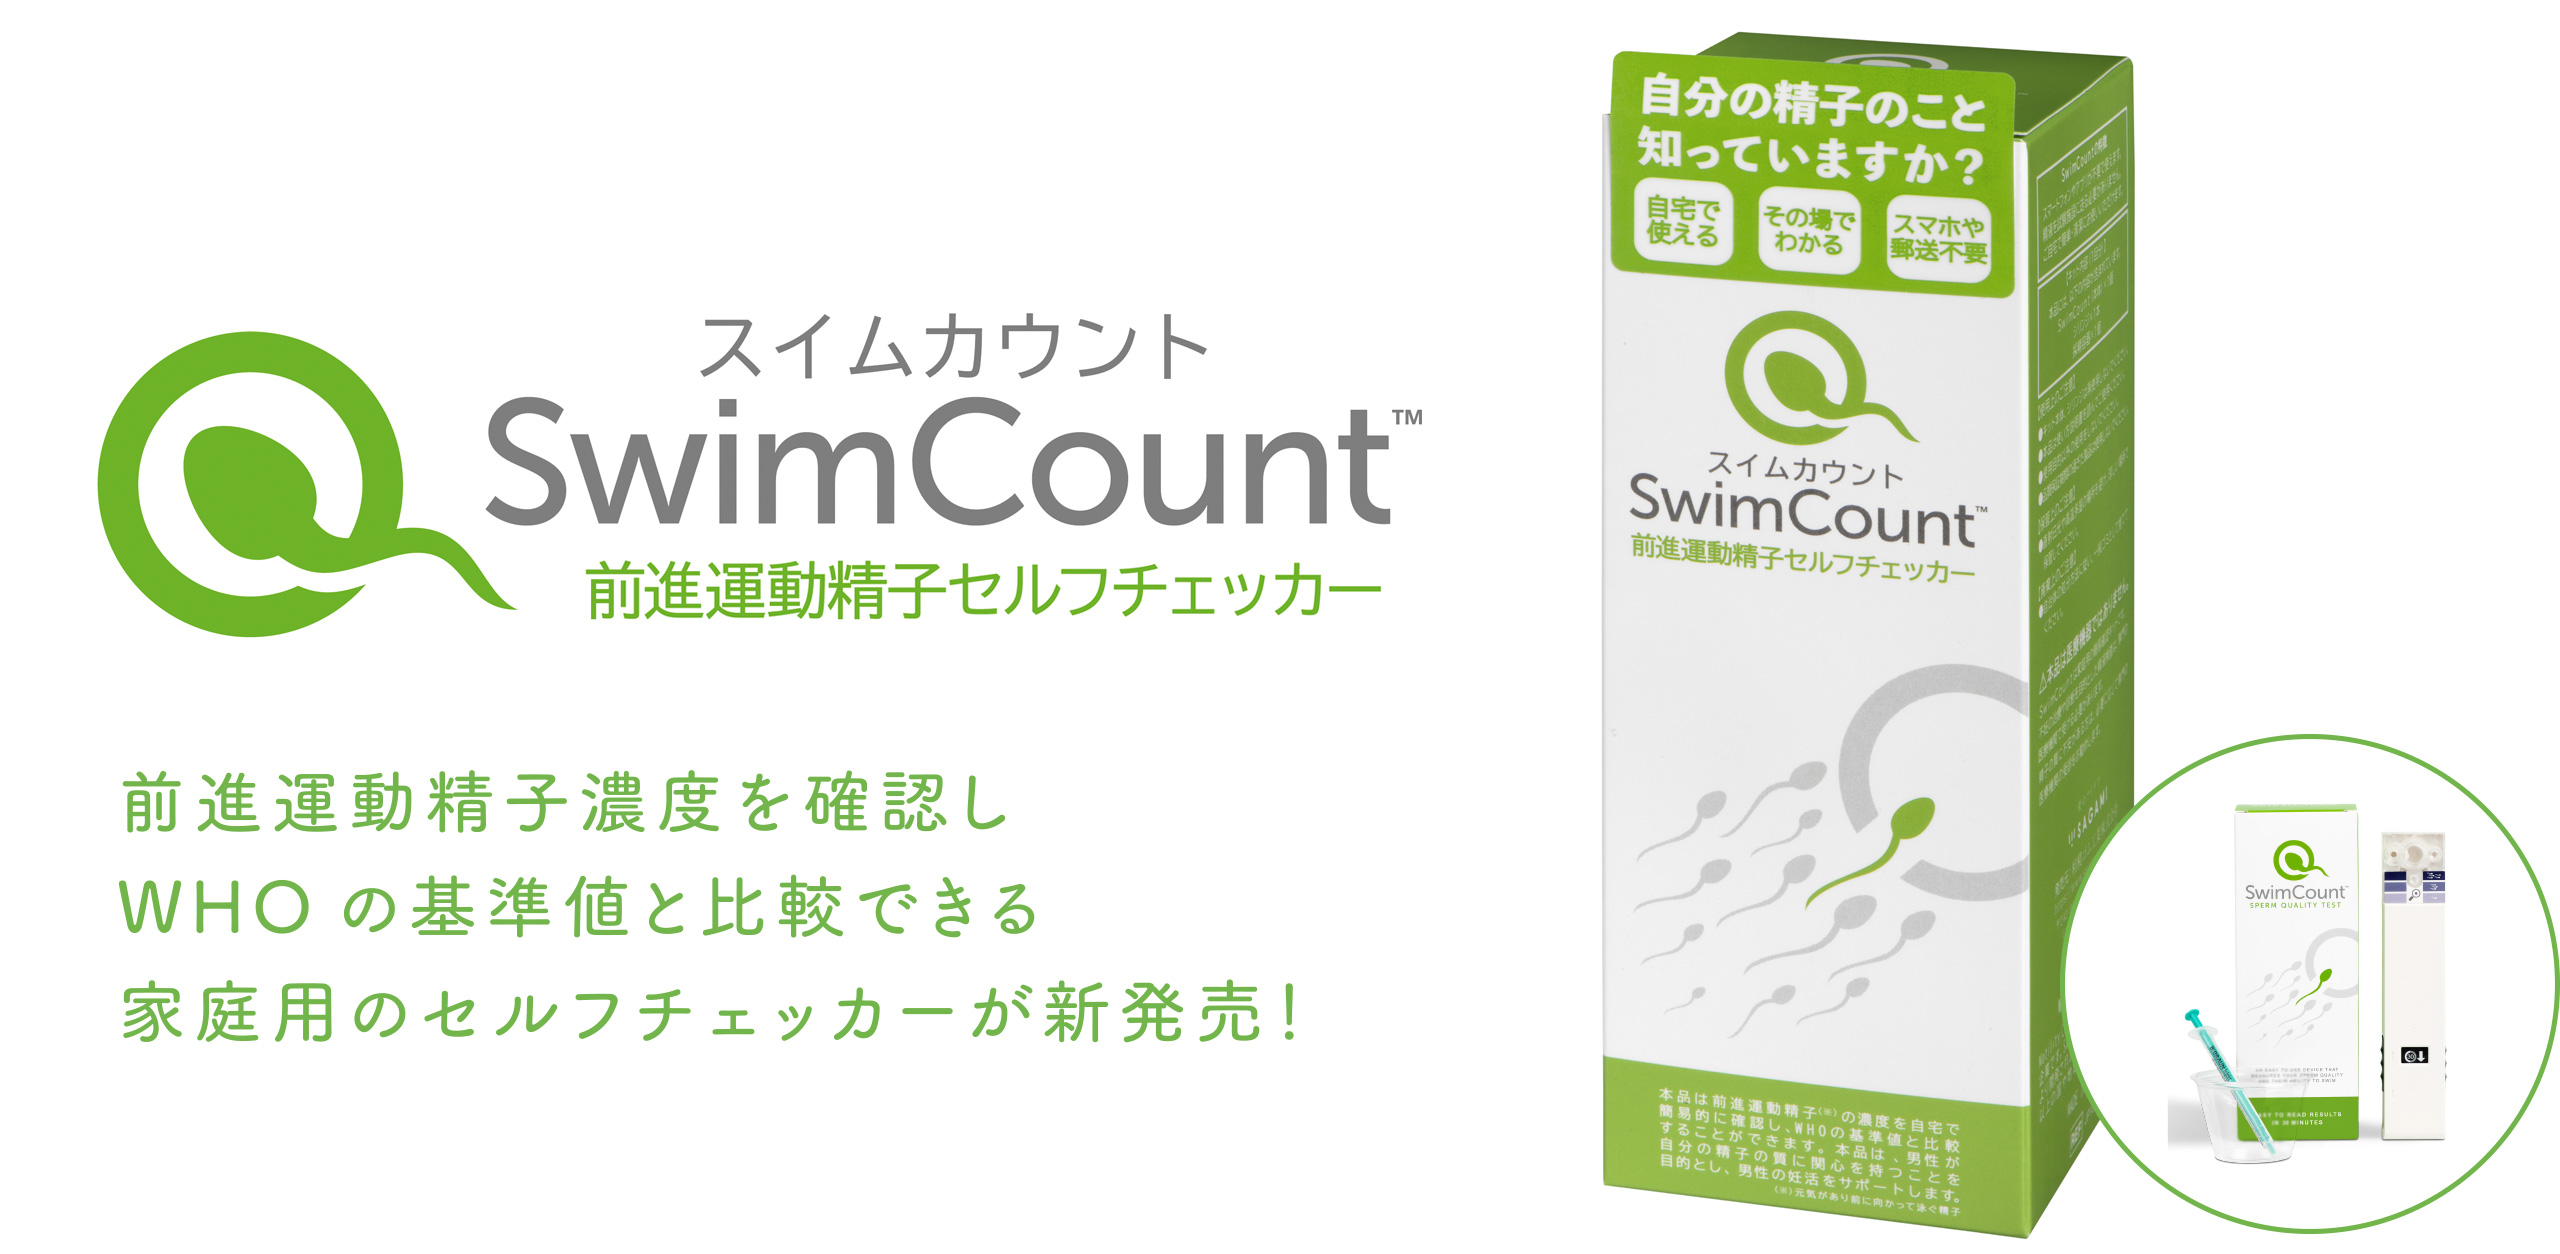 SwimCount